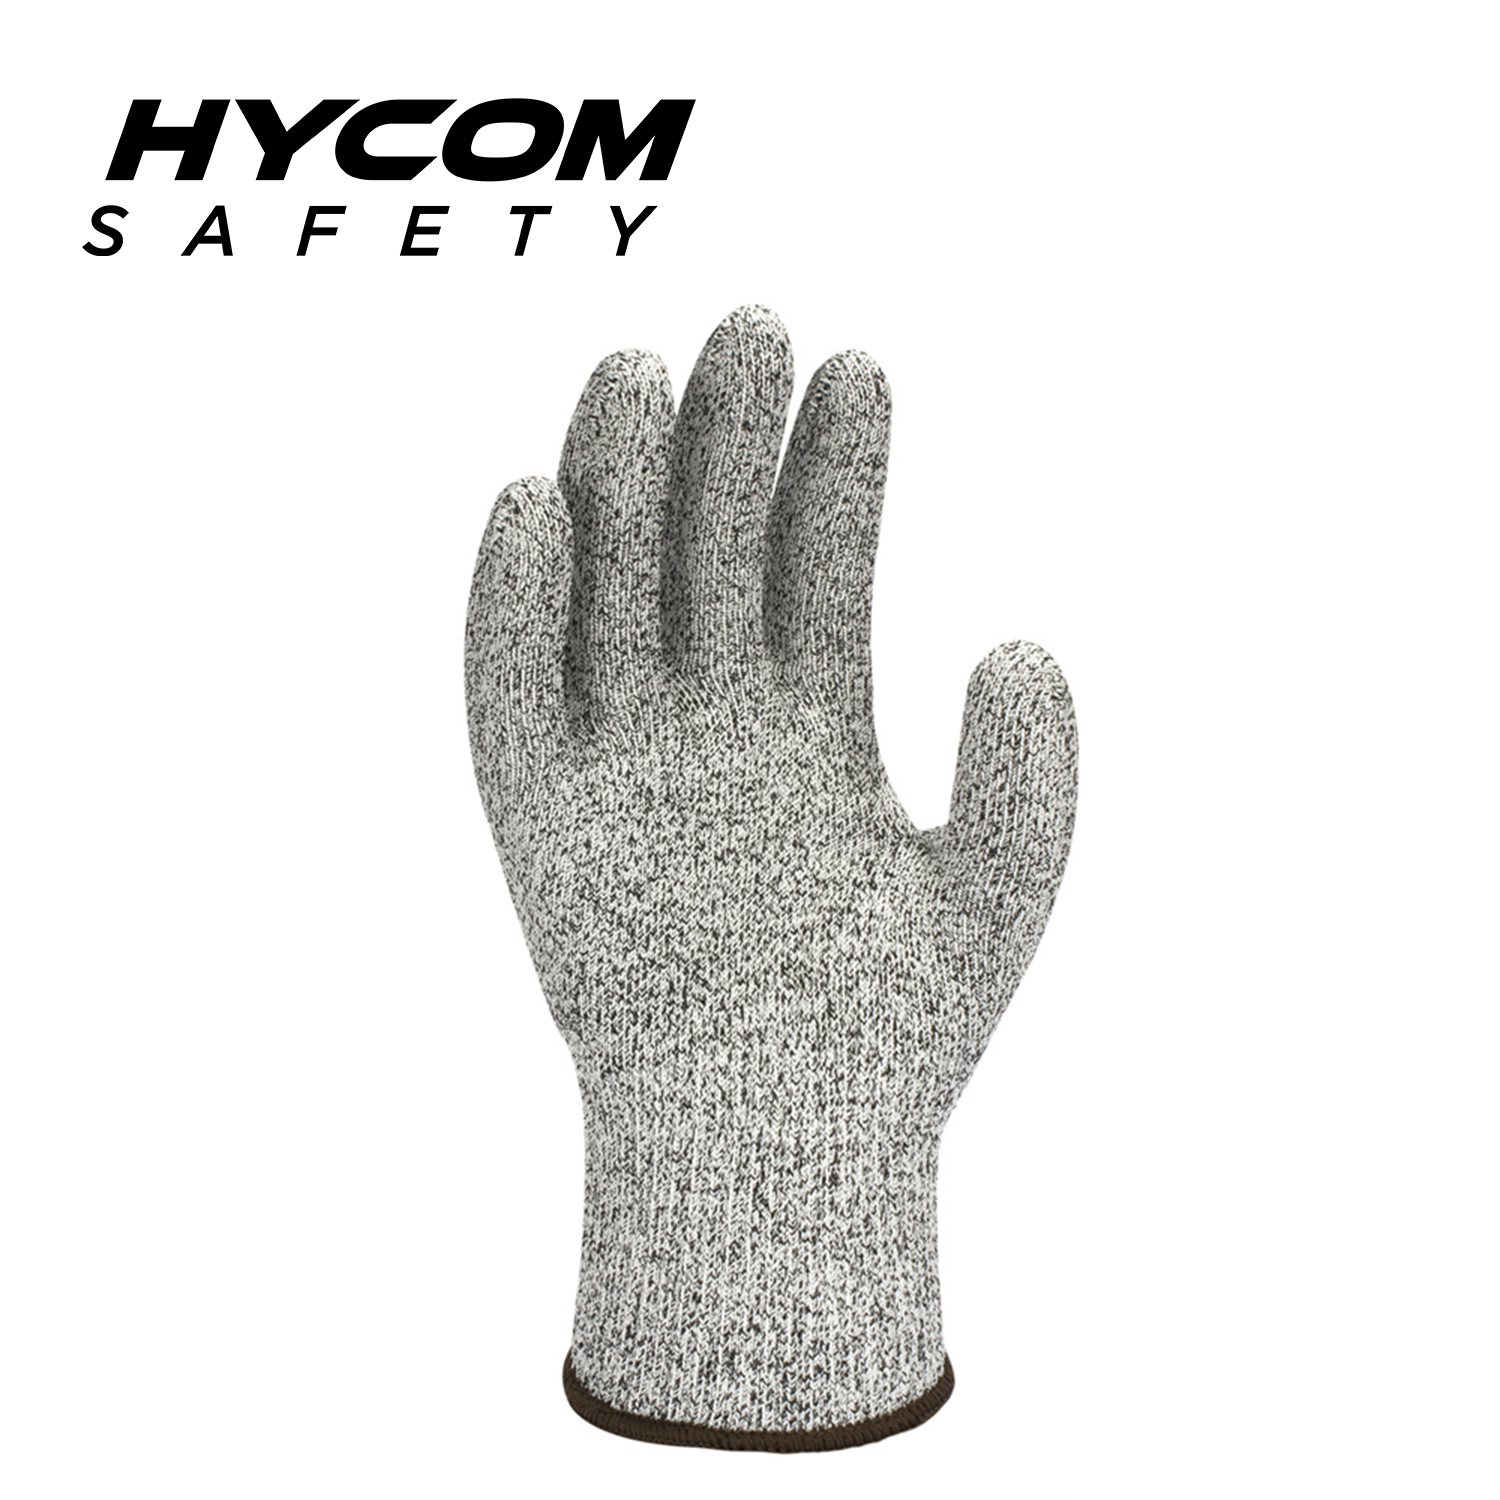 HYCOM 13G Stufe 5 schnittfester Handschuh FDA Lebensmittelkontakt direkt schnittfeste Handschuhe